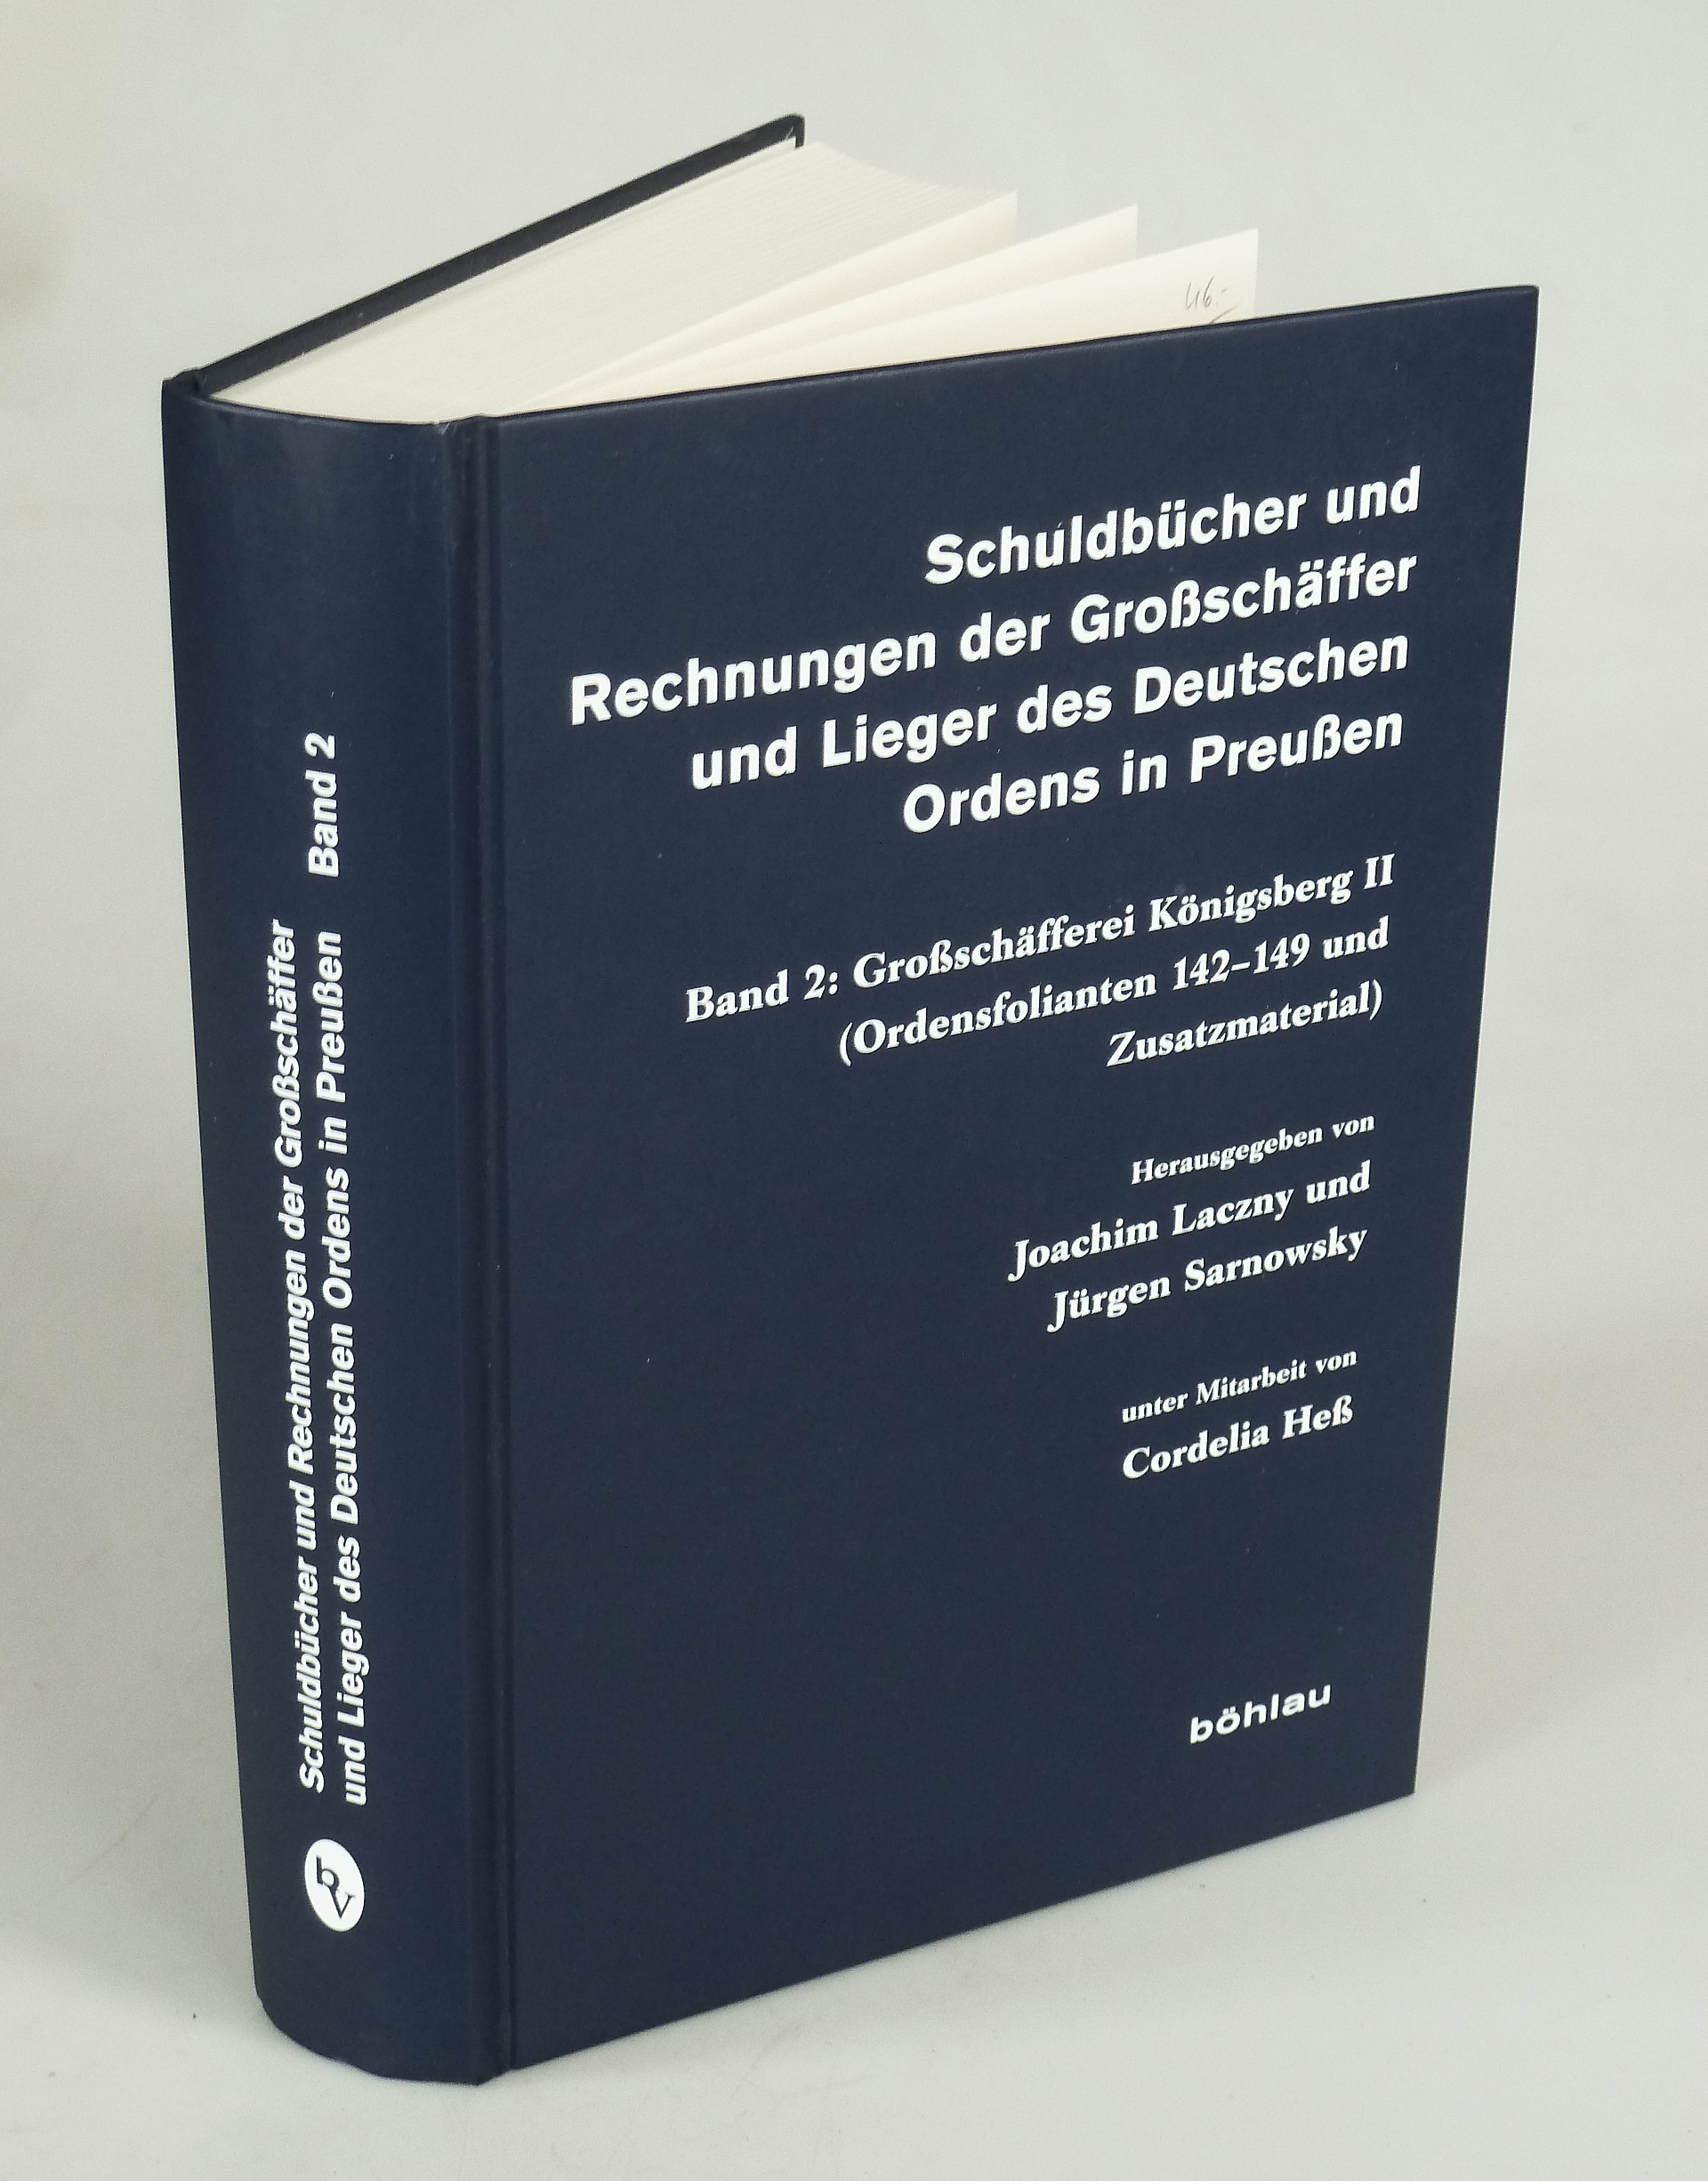 Schuldbücher und Rechnungen der Großschäffer und Lieger des Deutschen Ordens in Preußen Band 2. - LACZNY, JOACHIM U. JÜRGEN SARNOWSKY (HRSG.).